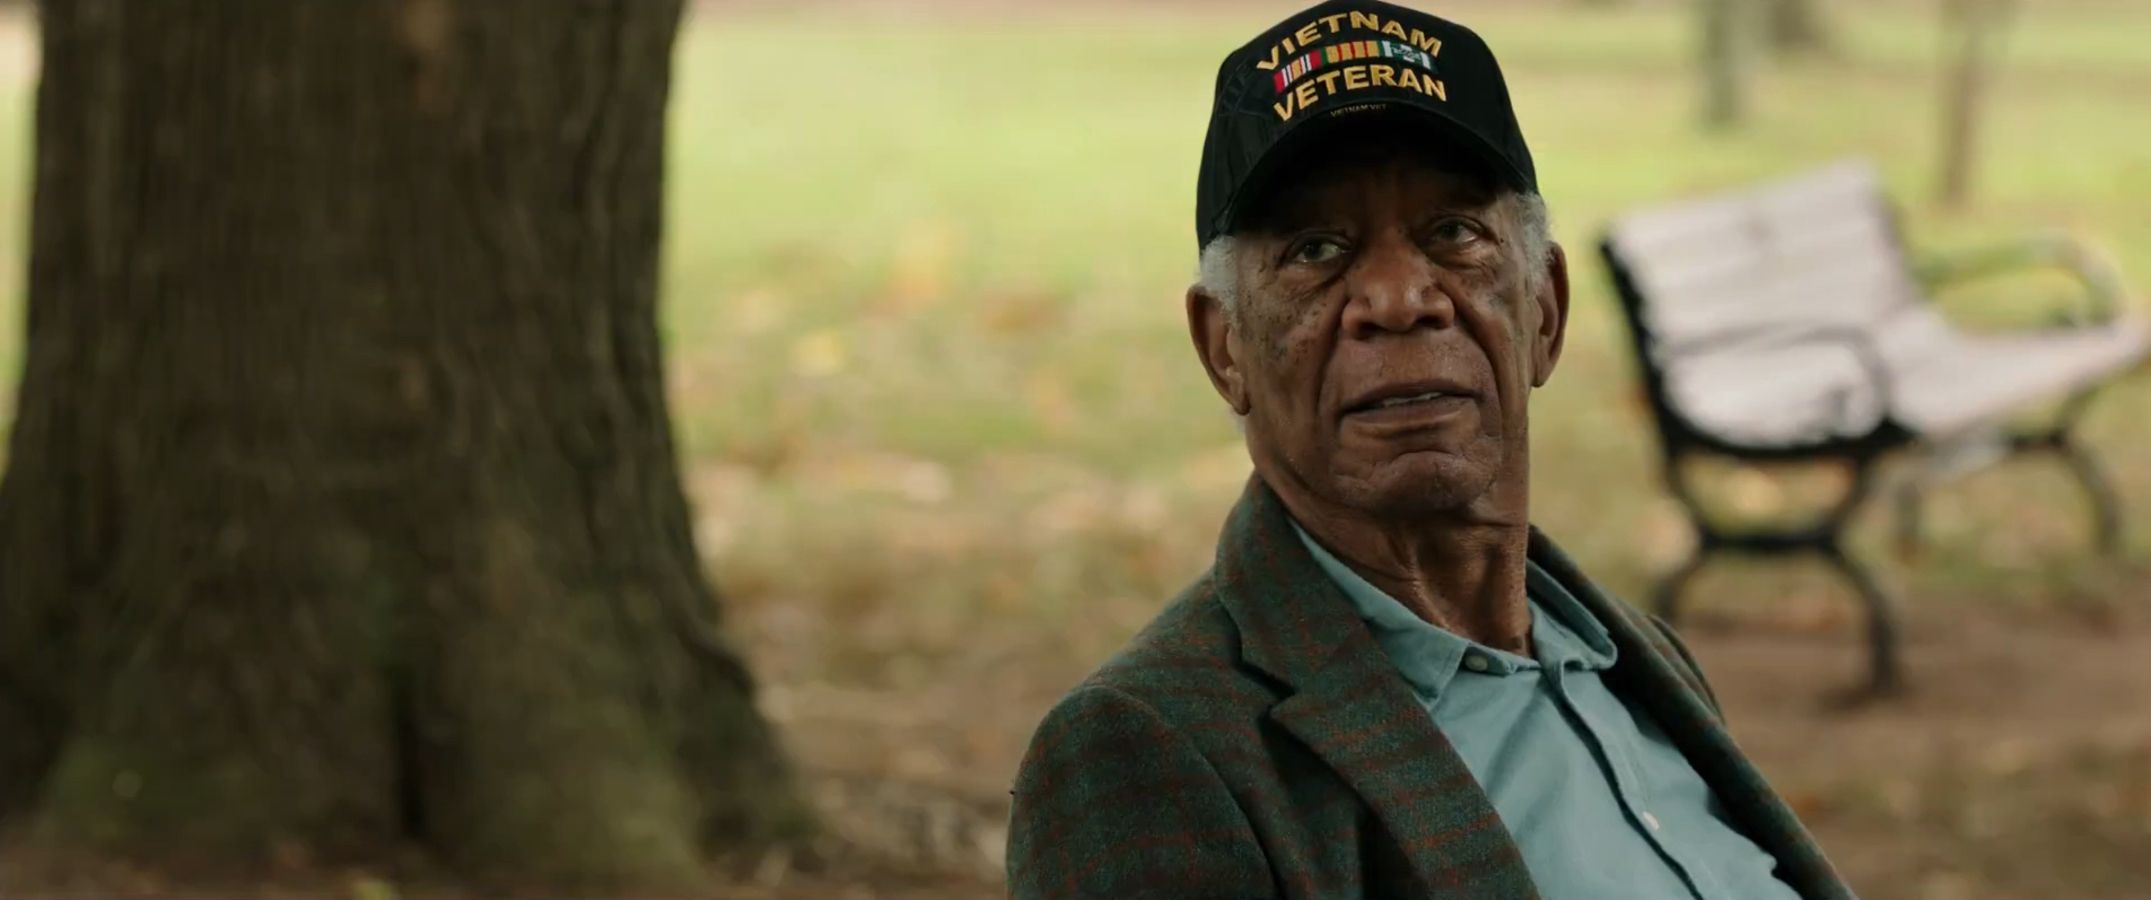 Morgan Freeman protagoniza una visión llena de luz sobre el duelo en 'Una buena persona'